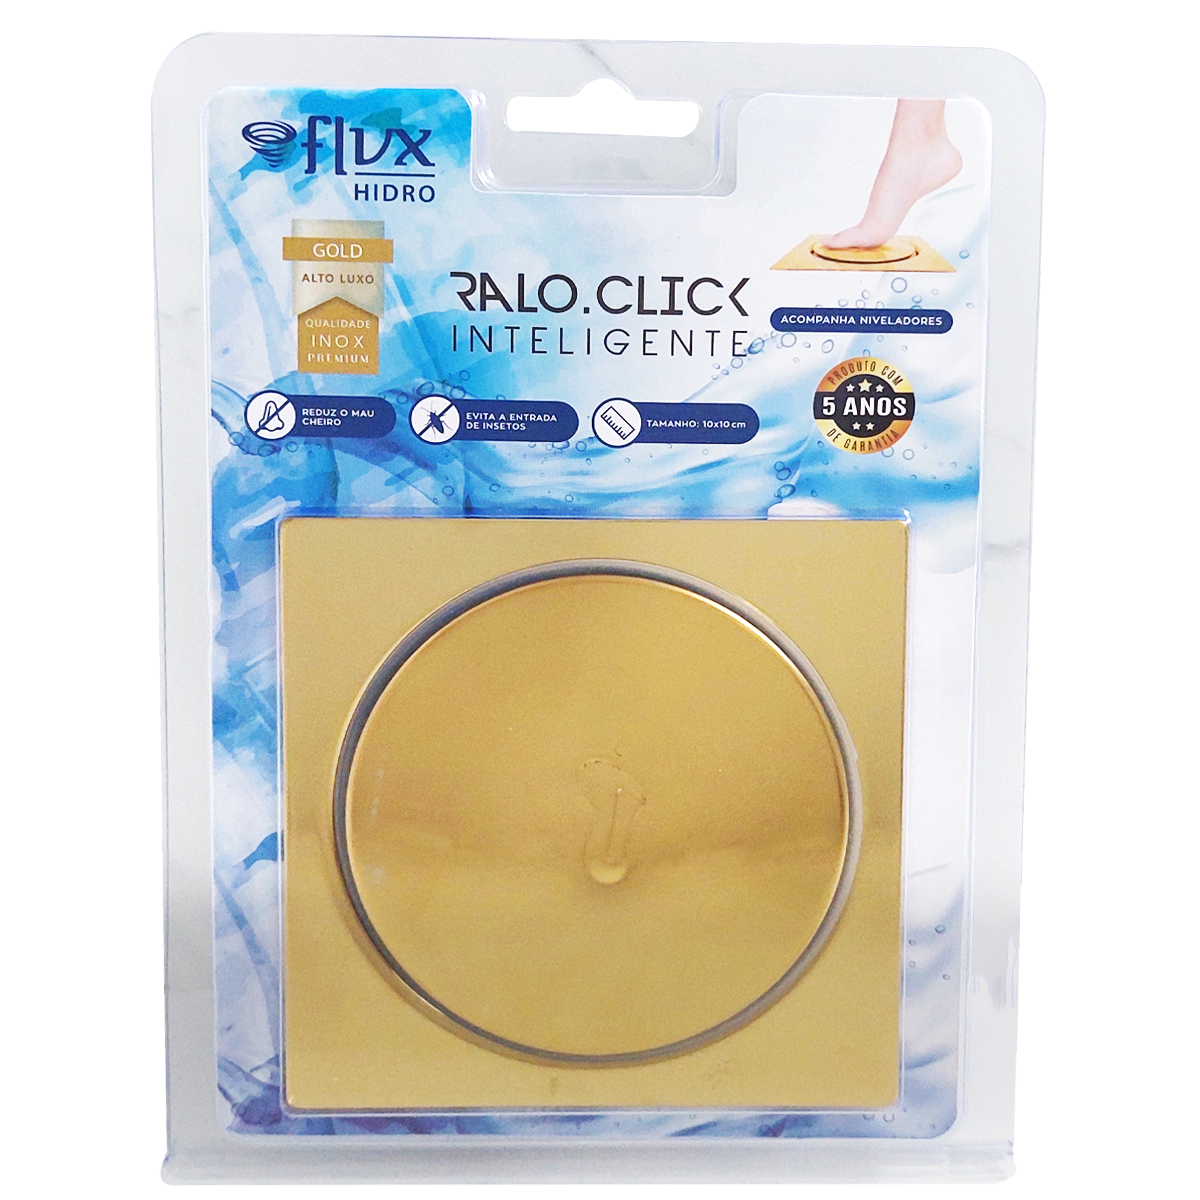 Ralo Click Quadrado 10x10cm Gold - 3